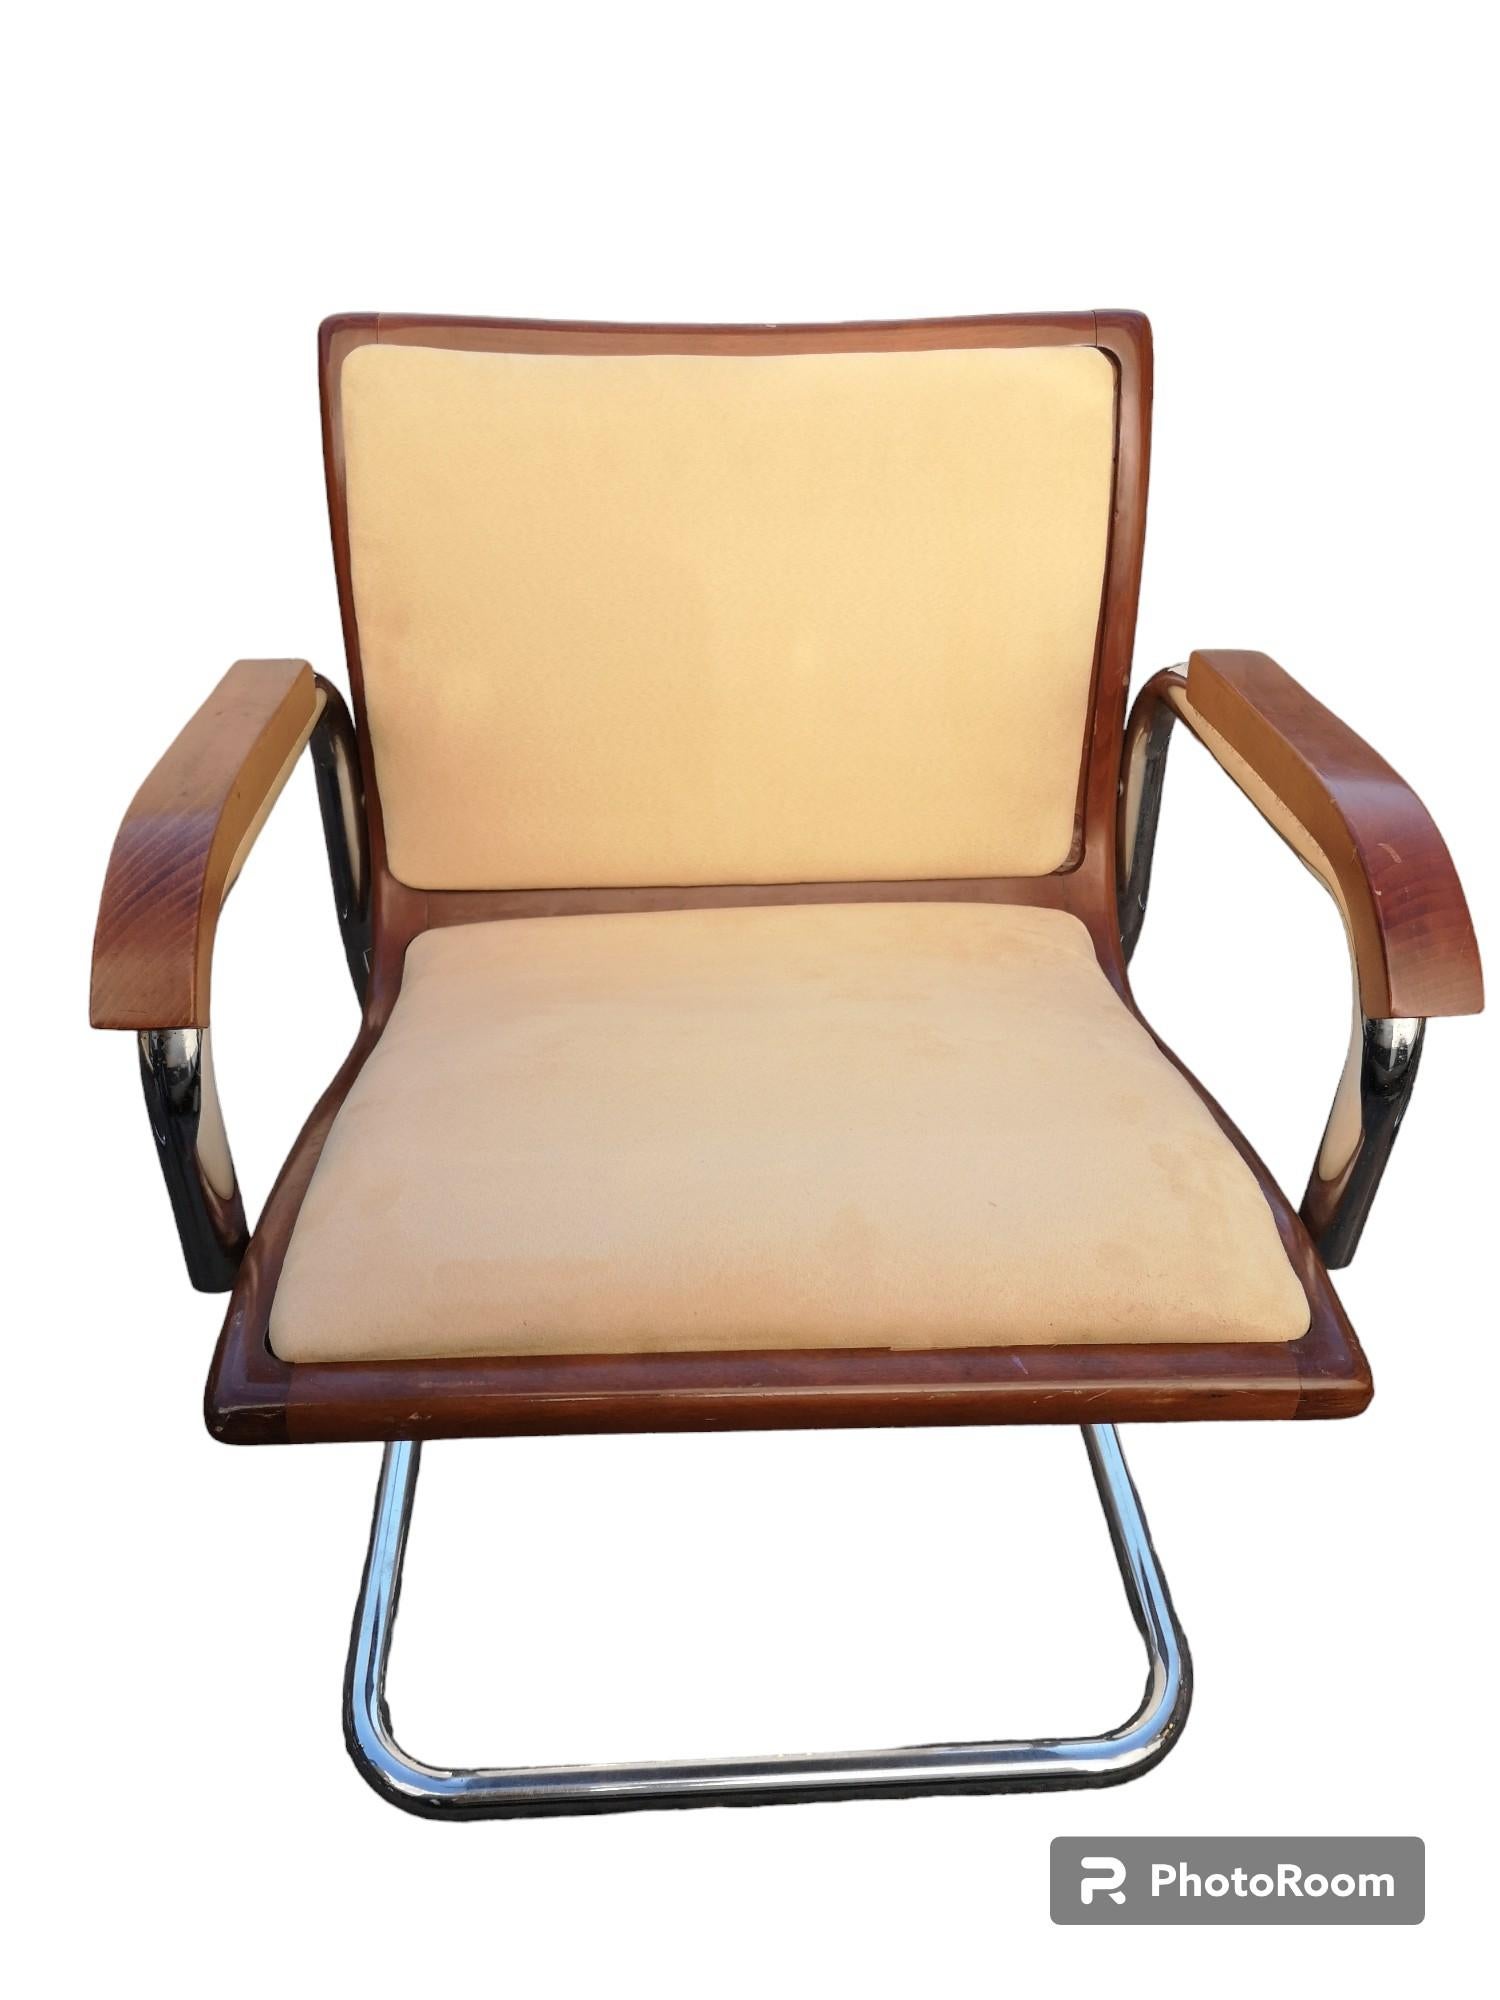 4 chaises modèle Cesca avec structure en acier et noyer et recouvertes de tissu alcantara des années 1970 en bon état.
L'assise et le dossier sont des panneaux amovibles.
Mesures de la présidence :
Largeur   56 cm
Profondeur   60 cm
Hauteur       